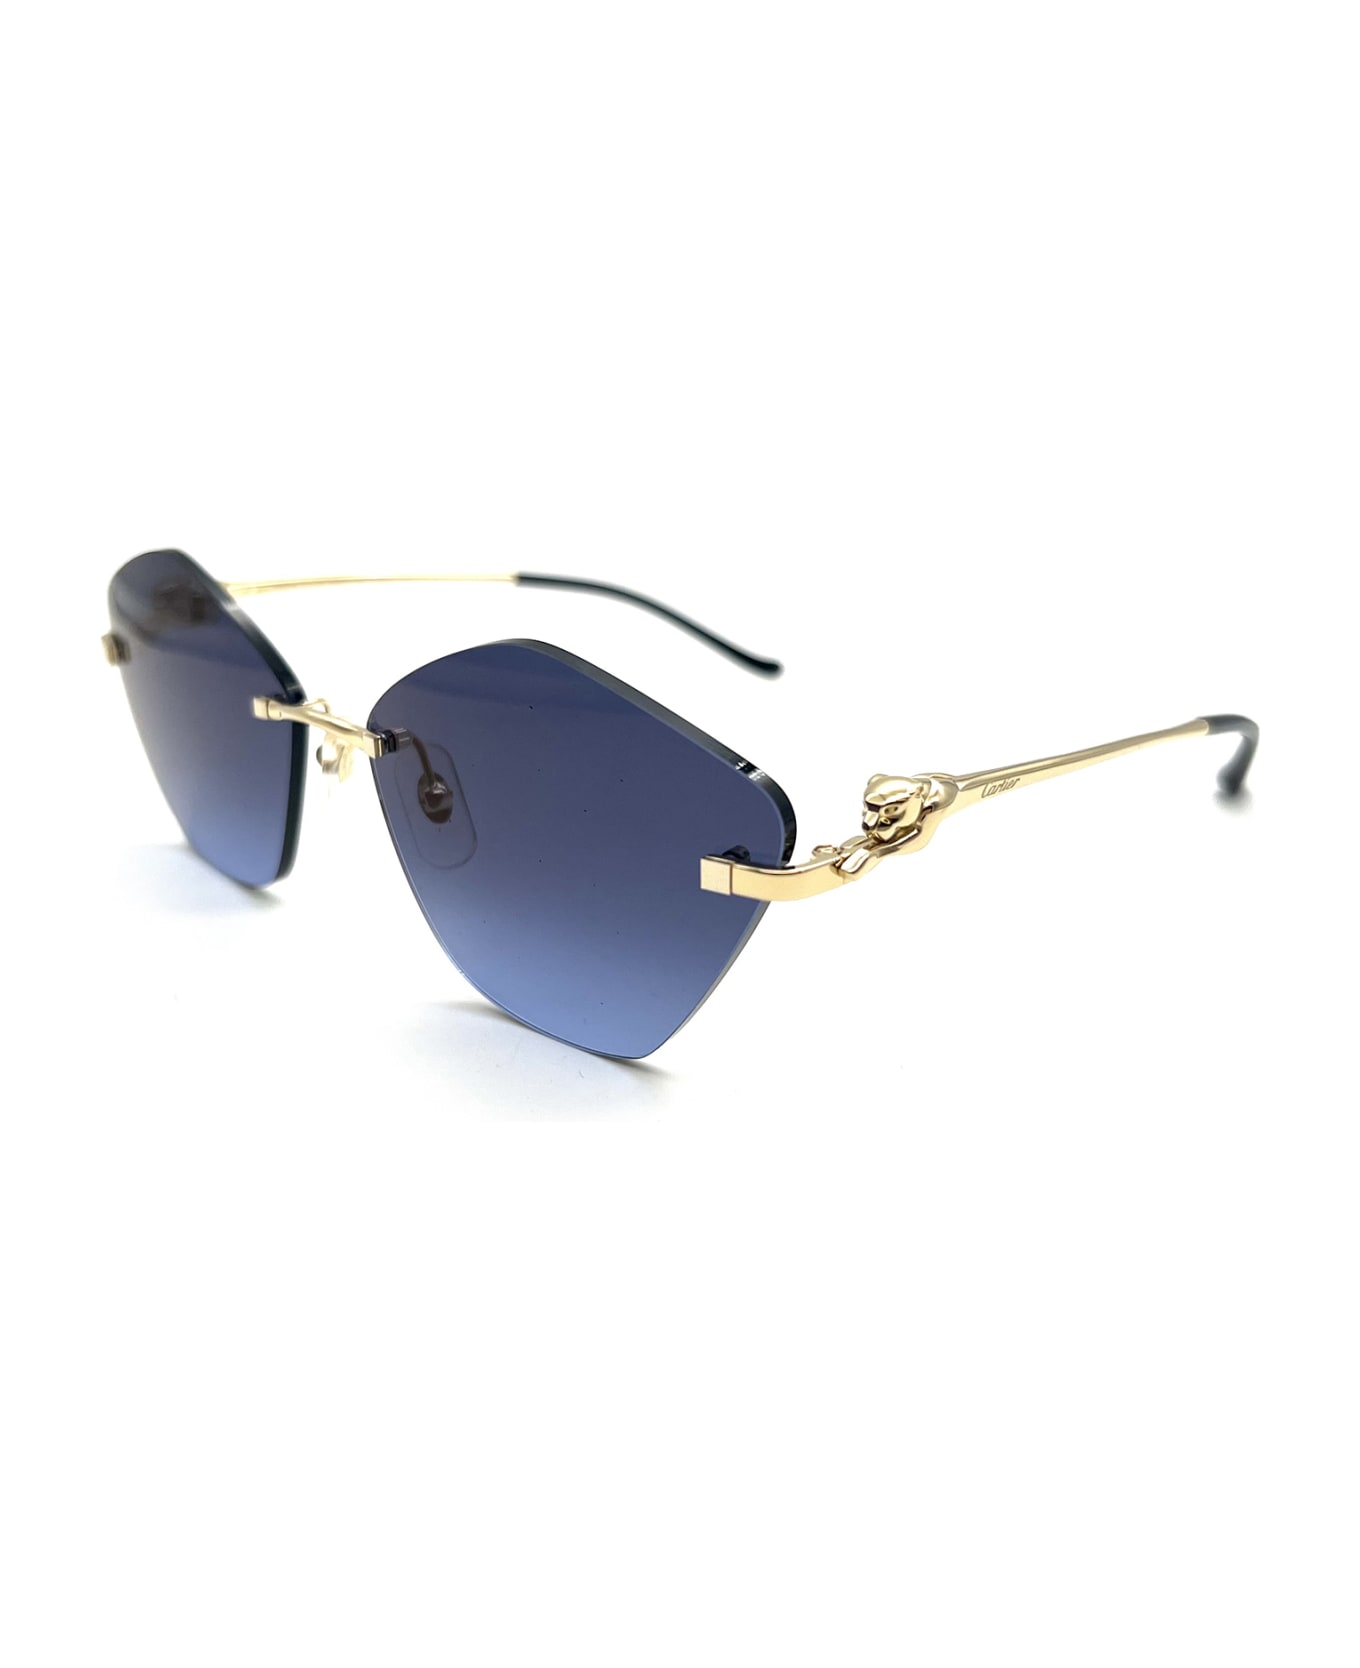 Cartier Eyewear Ct0429s Sunglasses - 004 GOLD GOLD BLUE